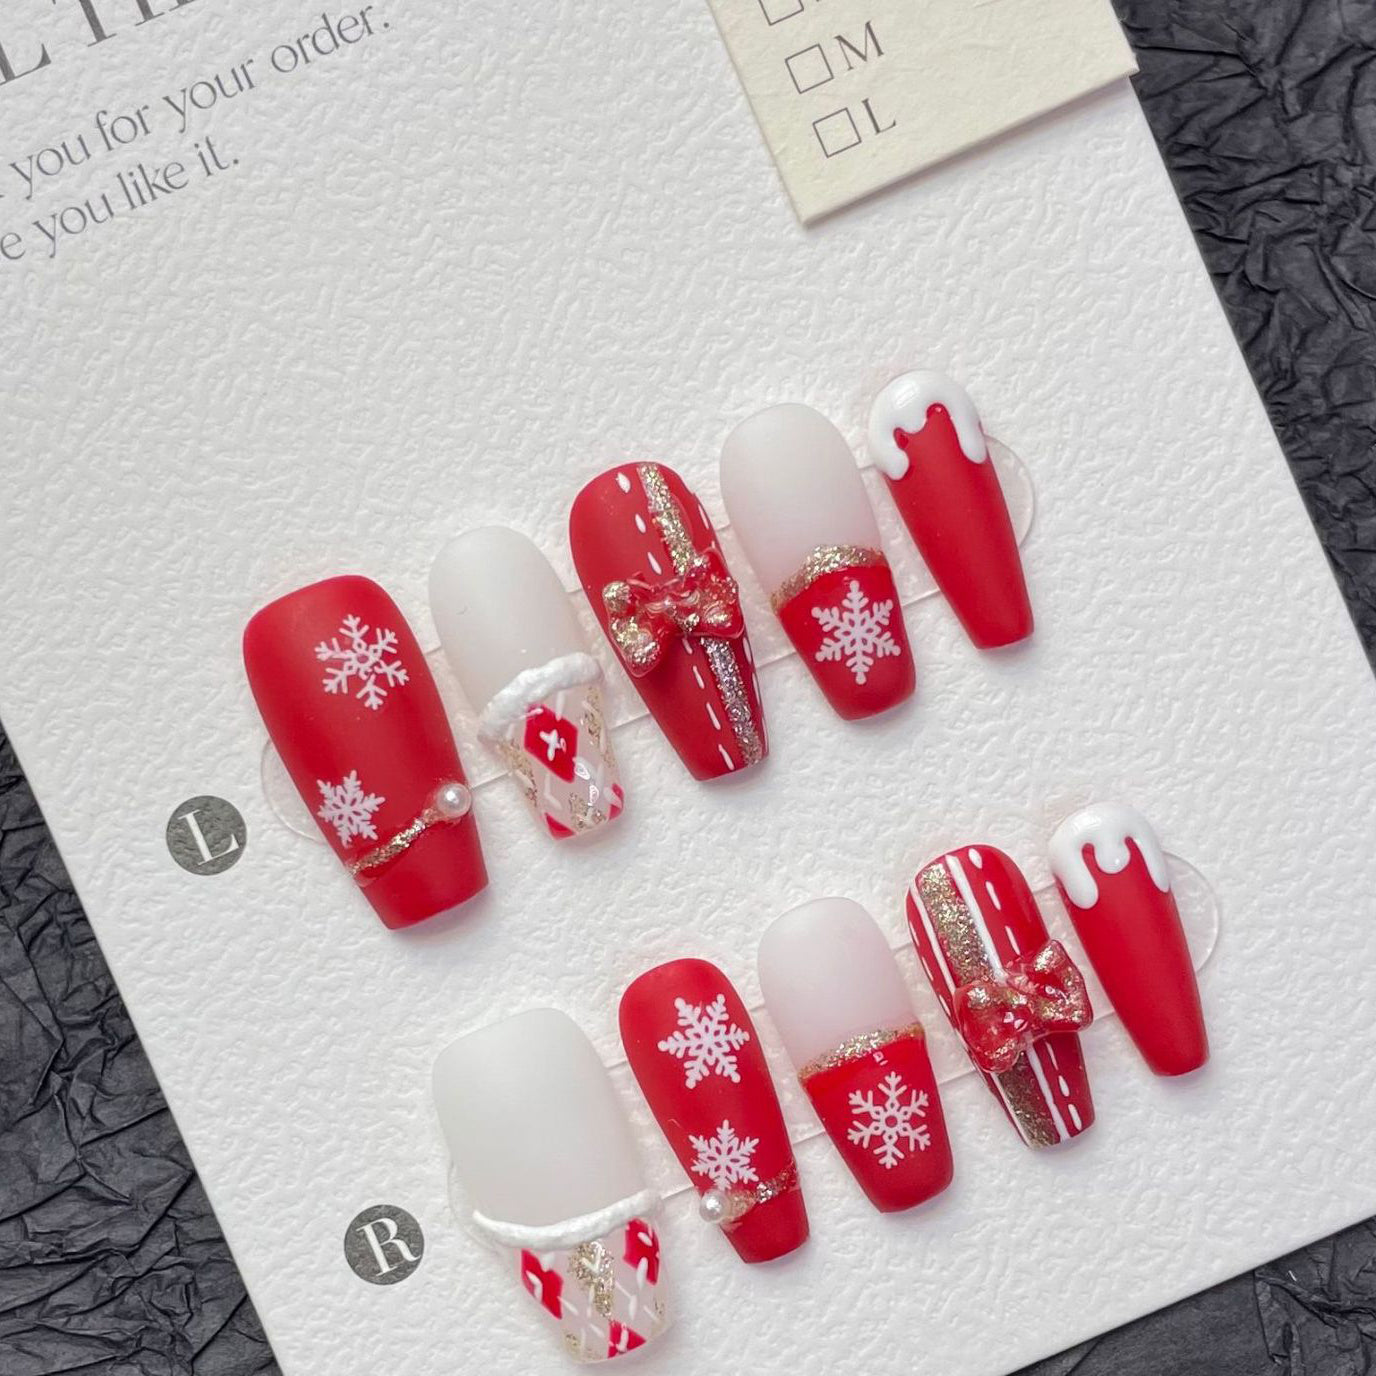 1272 Kerstsneeuwvlokken stijl pers op nagels 100% handgemaakte kunstnagels wit rood